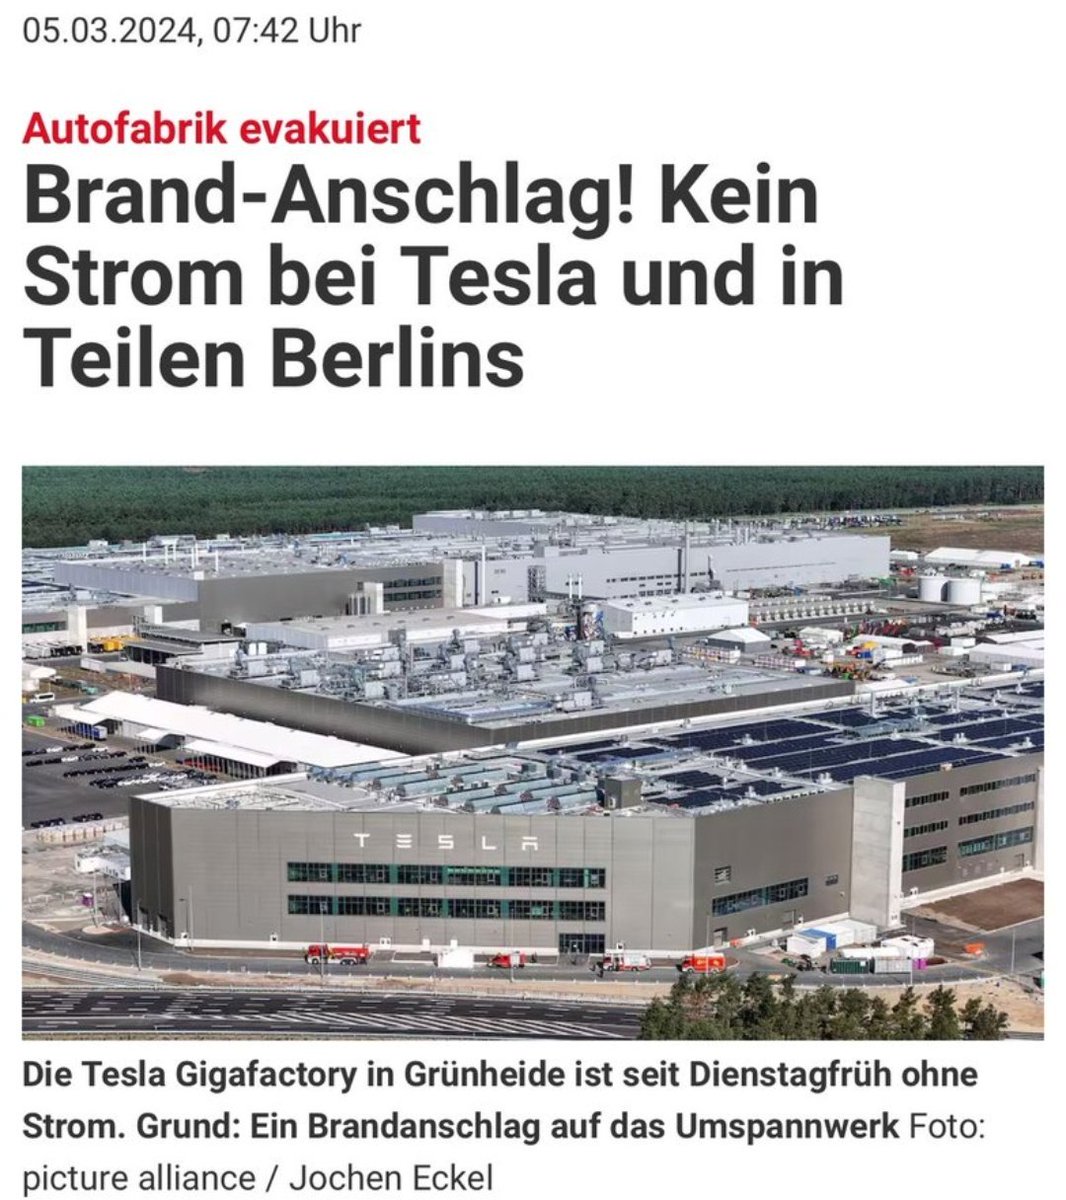 Brandanschlag auf die #Tesla Gigafactory in Grünheide. Wahrscheinlich werden Correctiv 'Recherchen' ergeben, daß Putin und die AfD hinter dem Anschlag steckt und nicht irgendwelche Klimaterroristen, die da die ganze Zeit campieren.